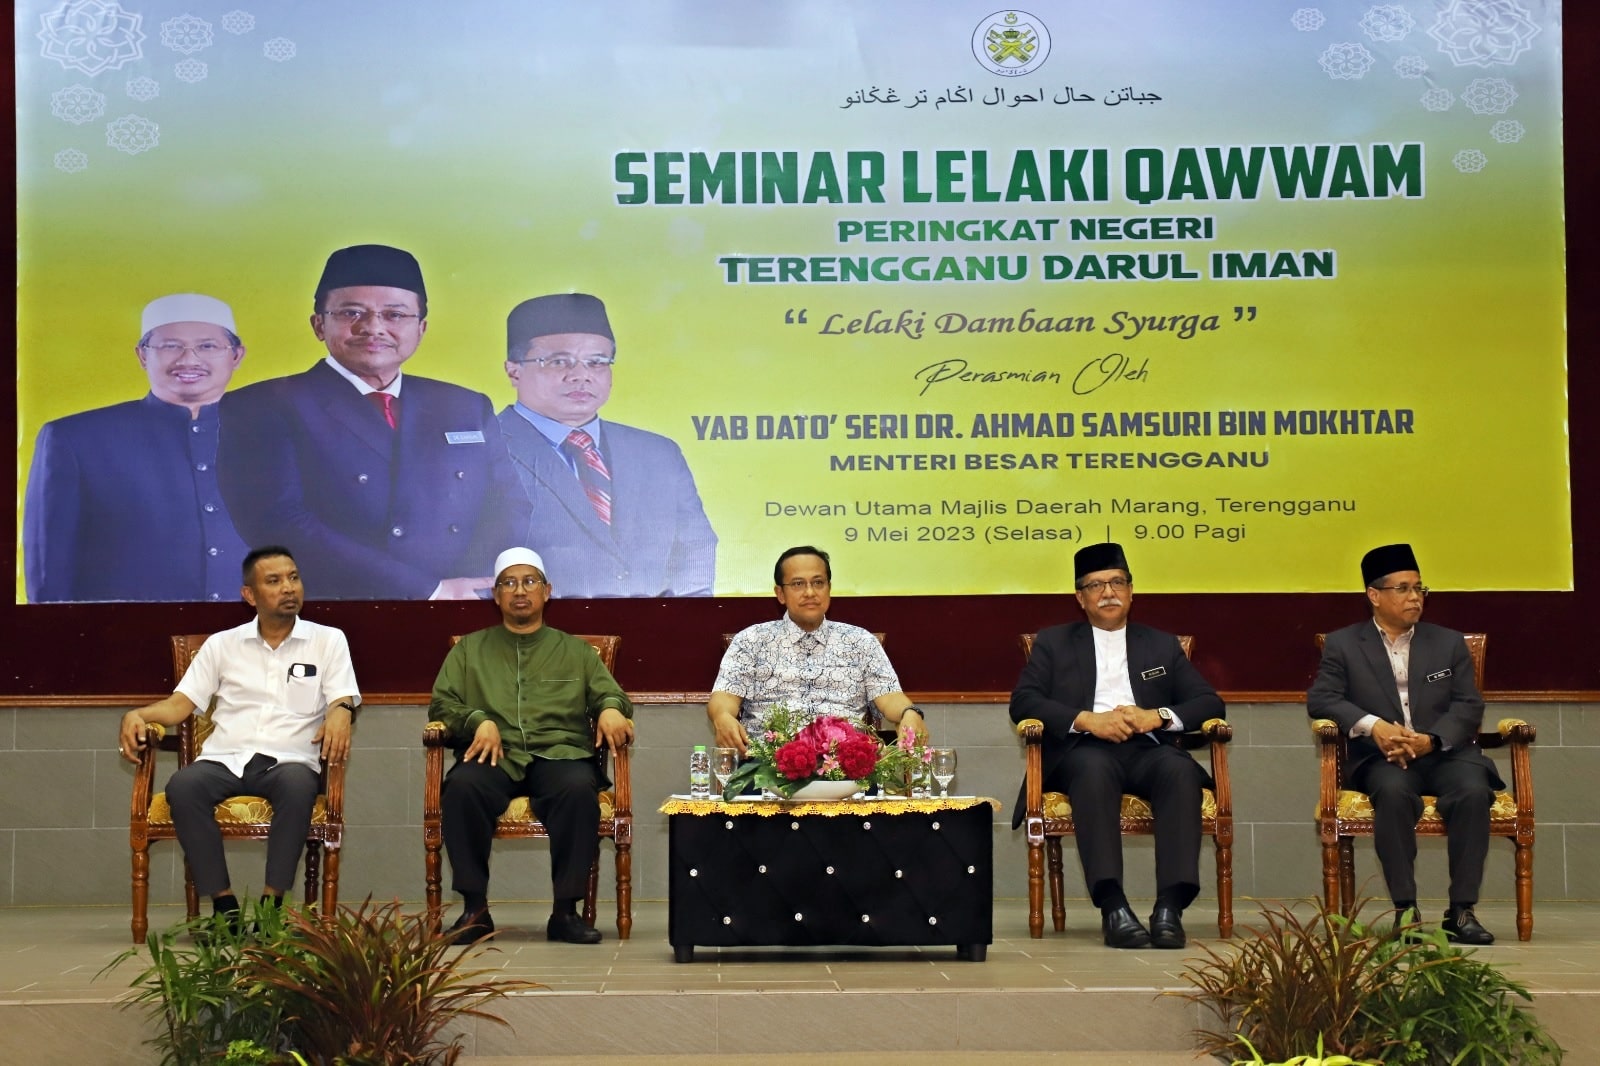 Seminar Lelaki Qawwam Peringkat Negeri Terengganu Darul Iman Lelaki Dambaan Syurga1 min